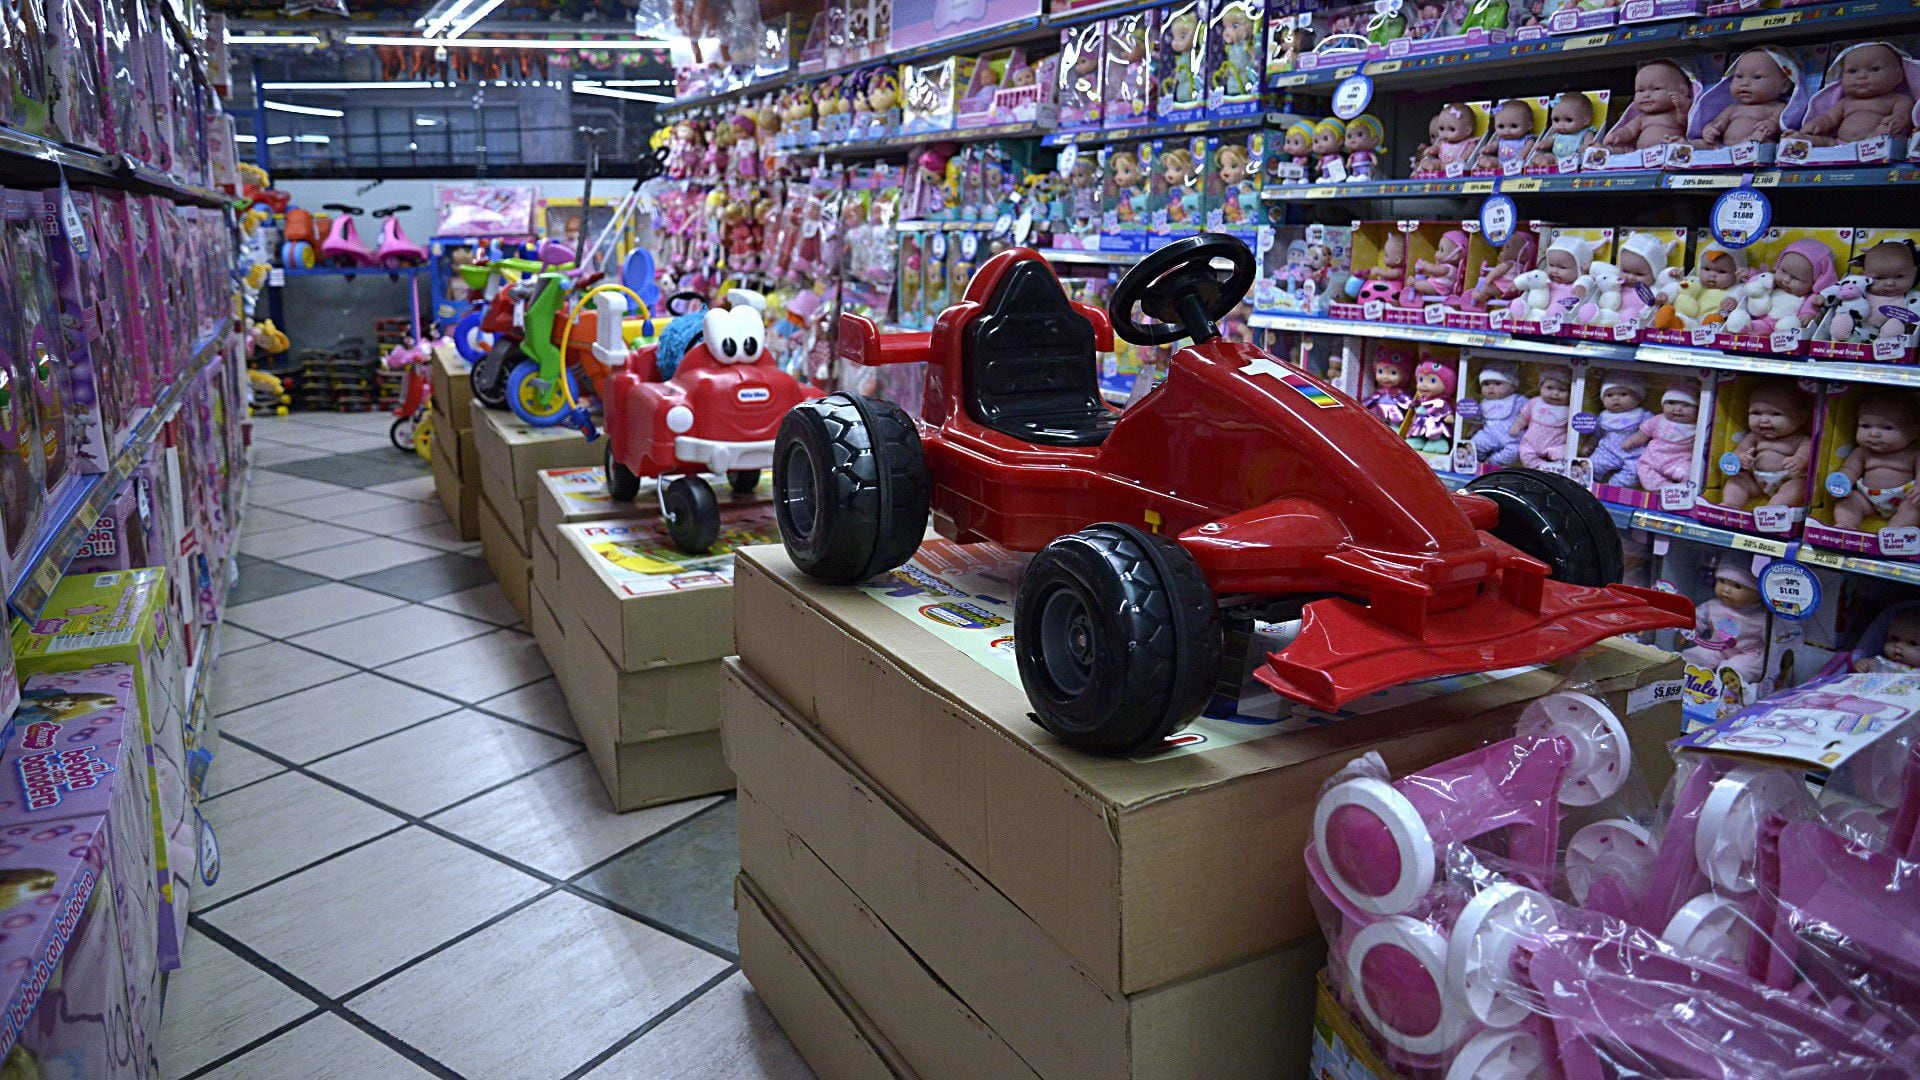 Los juguetes tuvieron un aumento interanual del 110%, por debajo de la inflación proyectada. (Gustavo Gavotti)